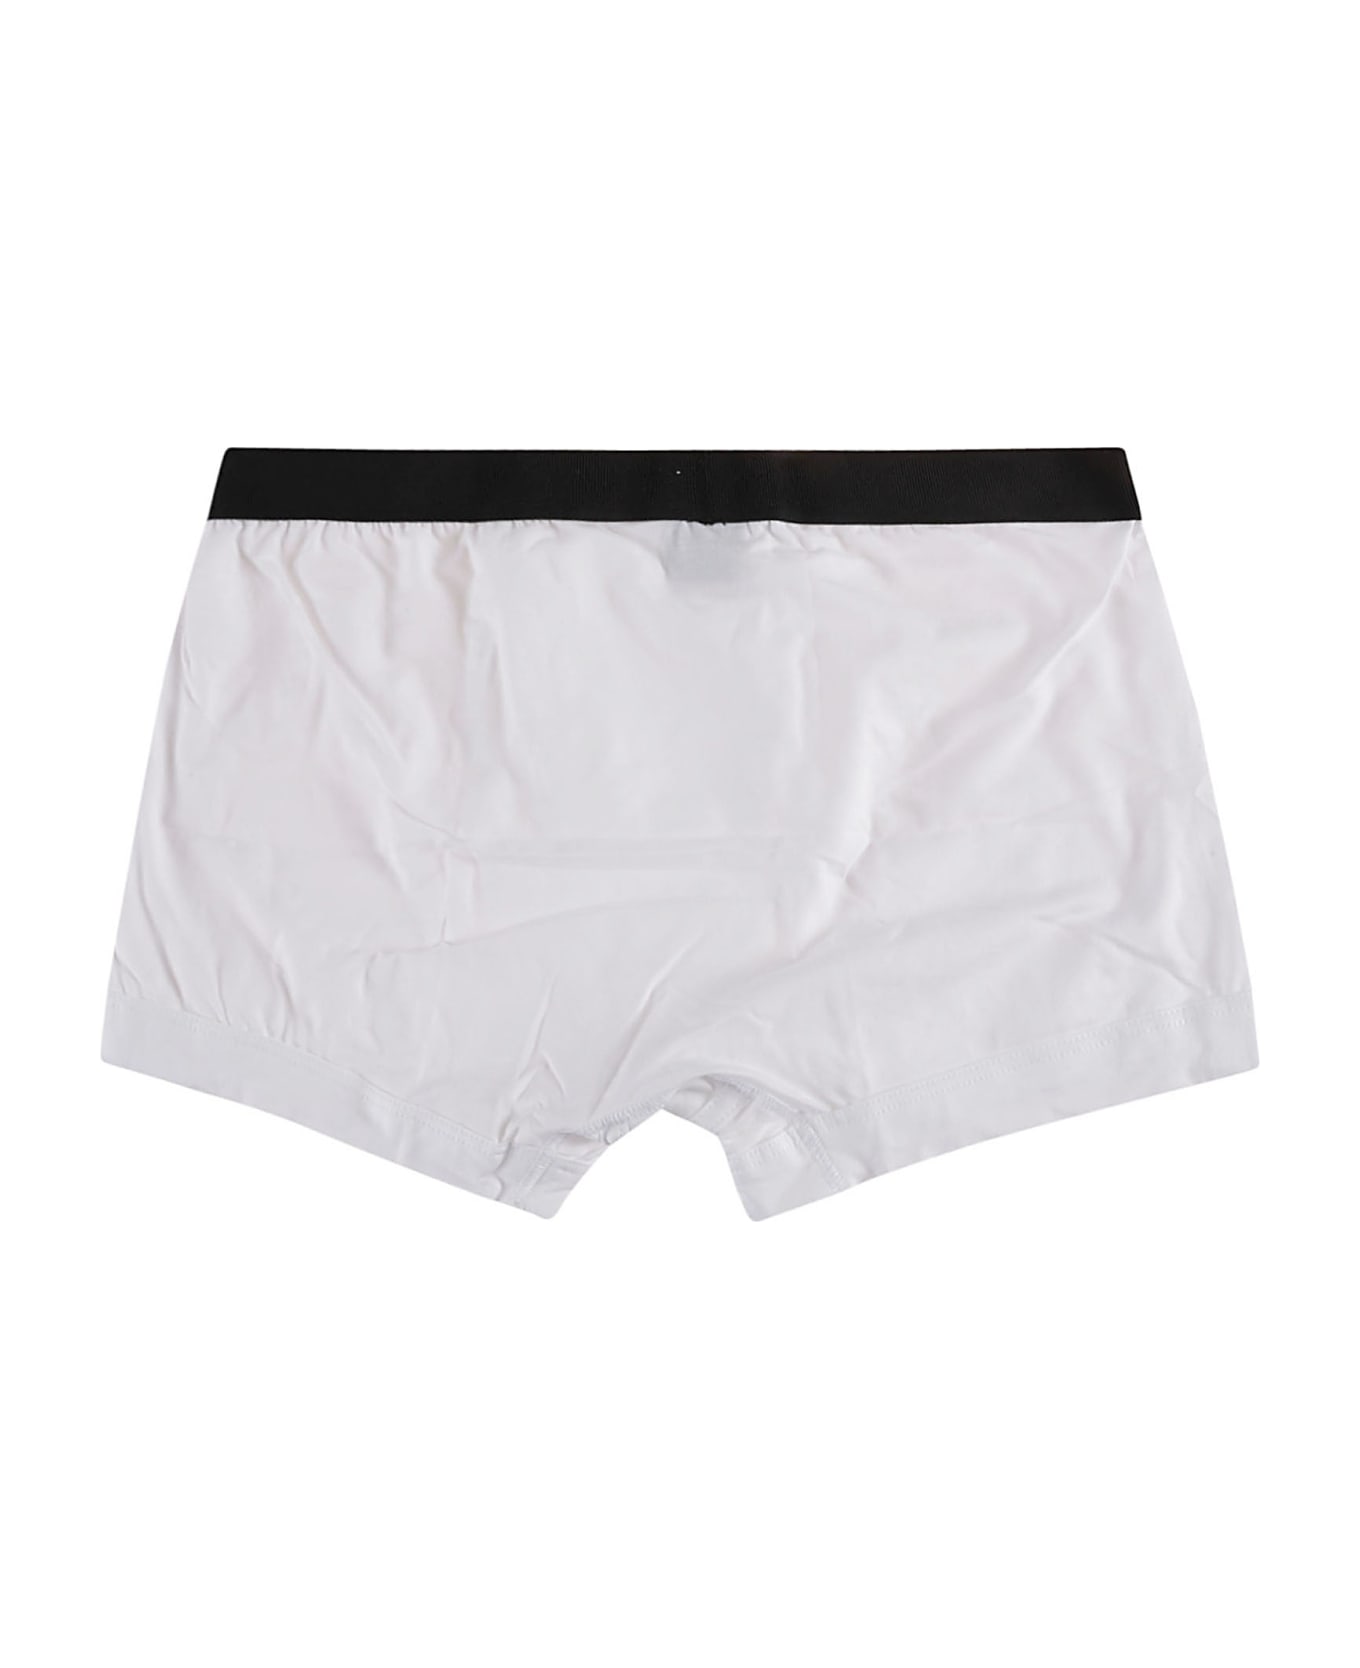 Tom Ford Elastic Logo Waist Boxer Shorts - White ショーツ